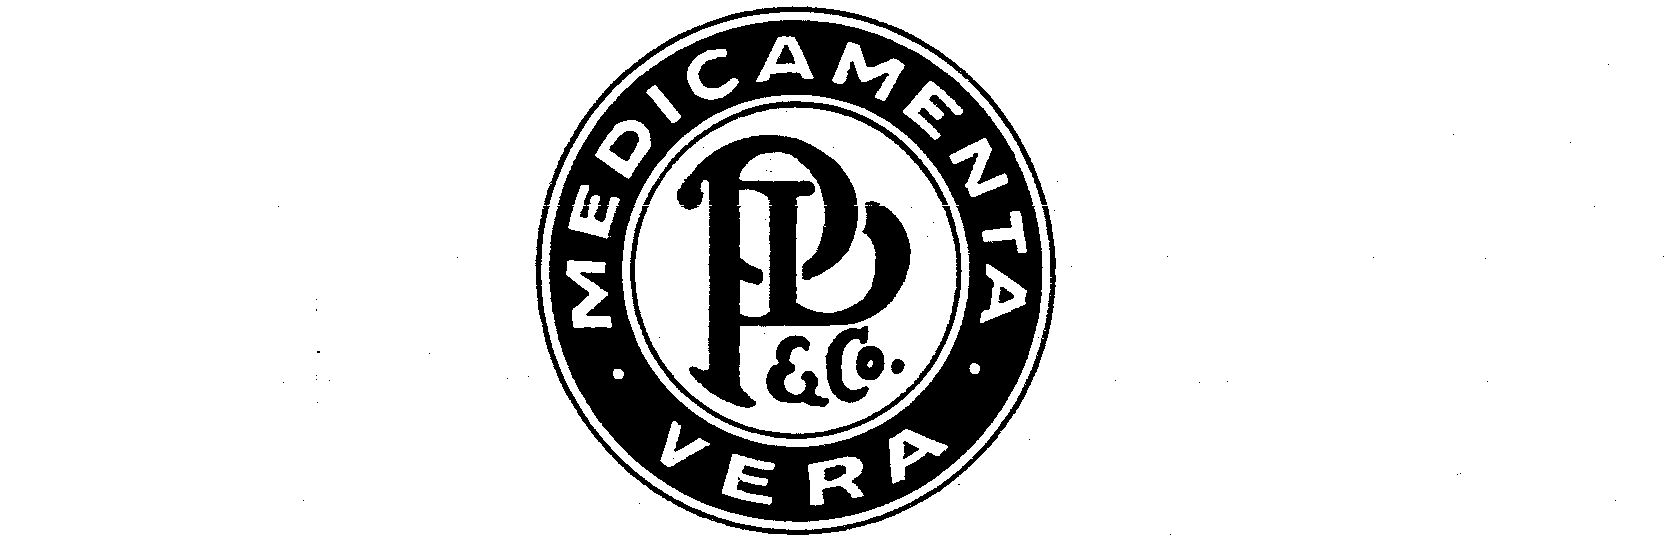  MEDICAMENTA VERA P.D. &amp; CO.